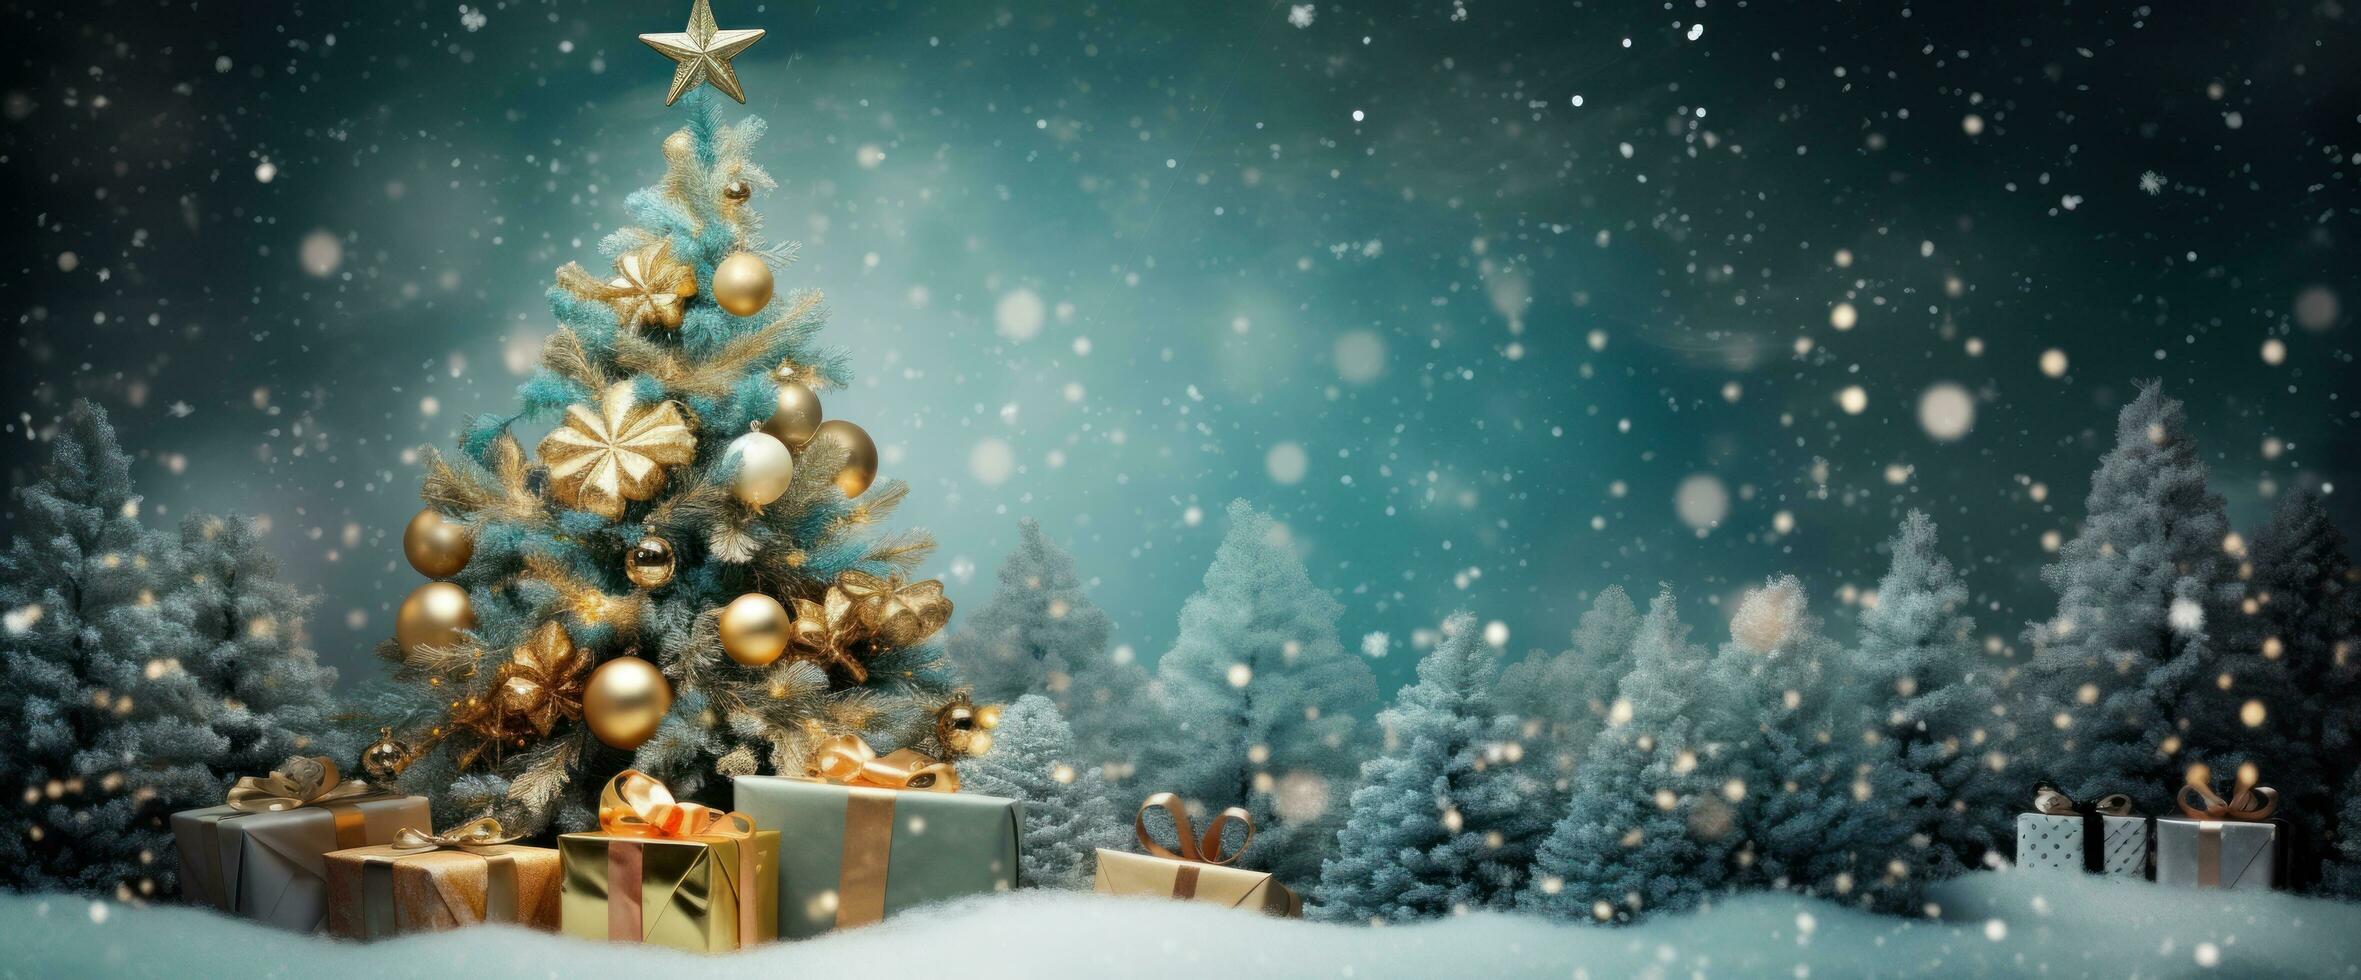 Christmas tree holiday background photo